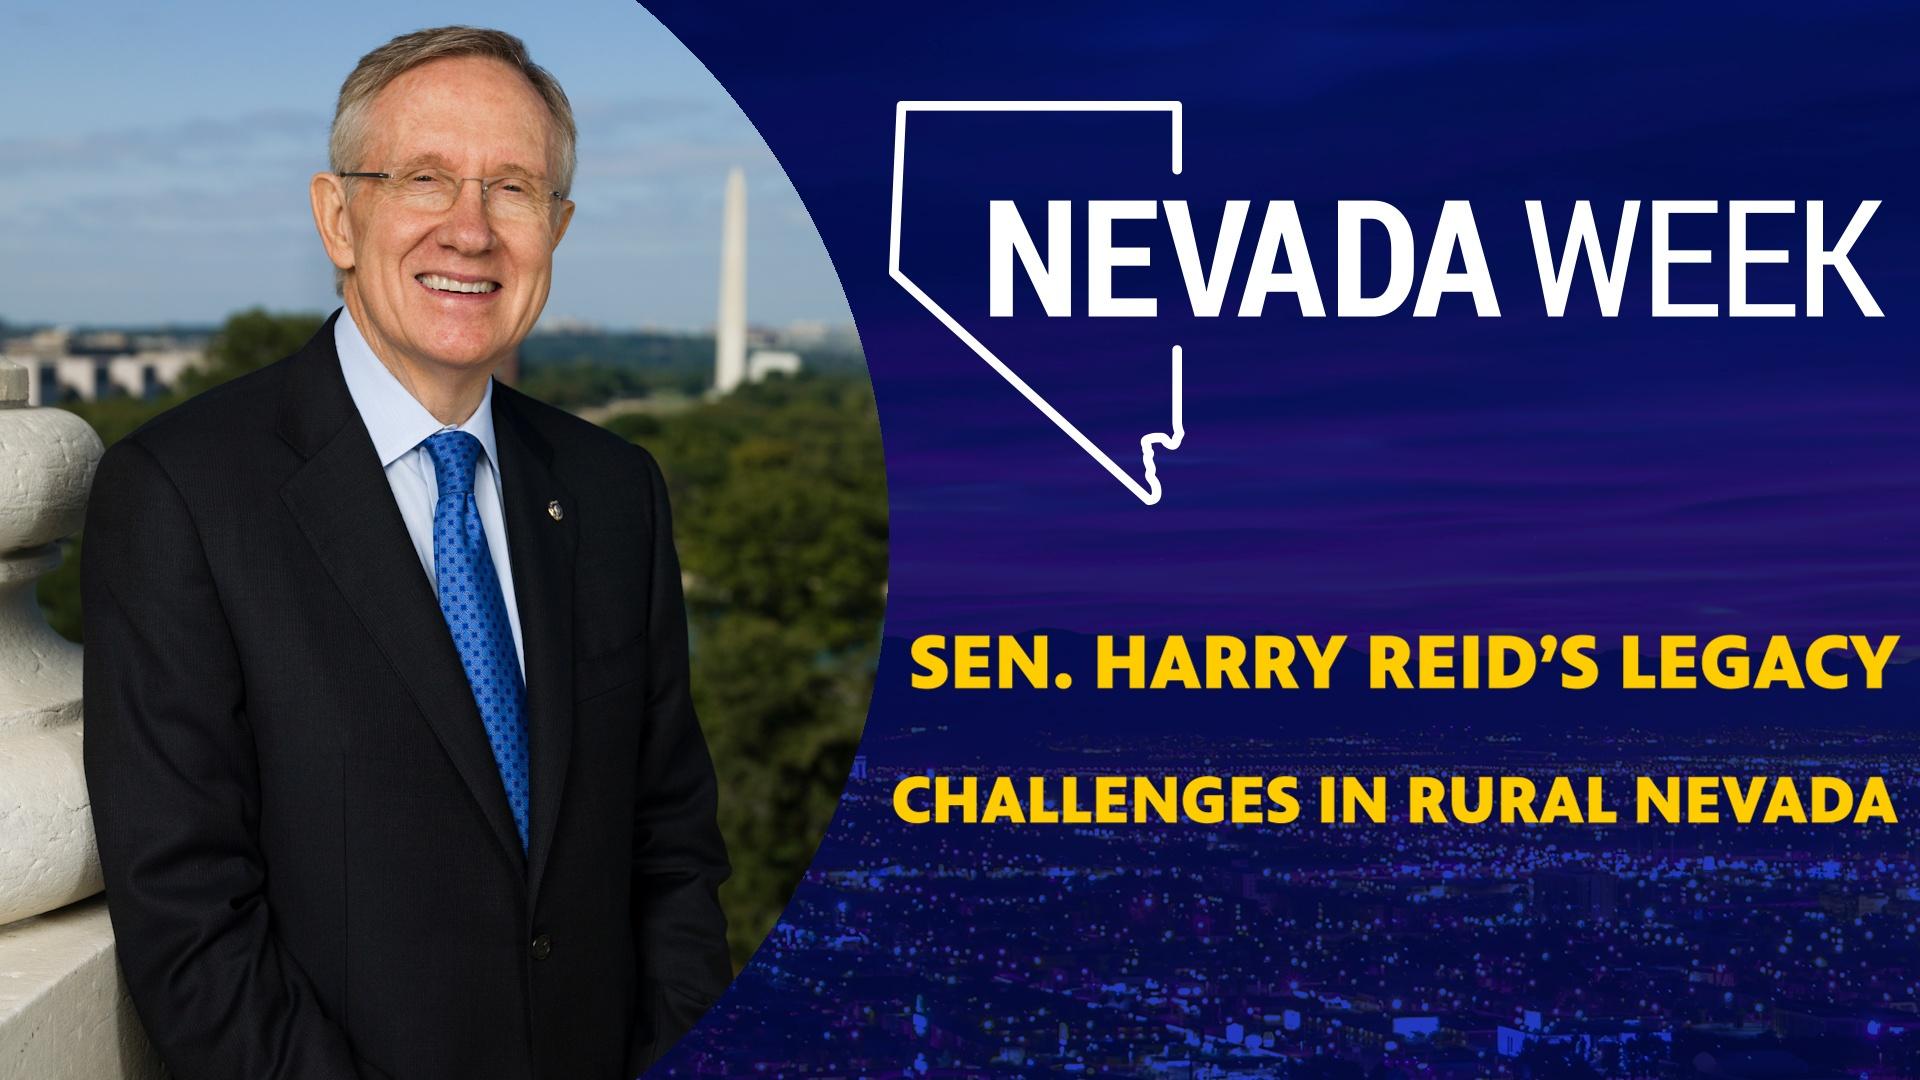 Sen. Harry Reid’s Legacy, Challenges Rural Nevada